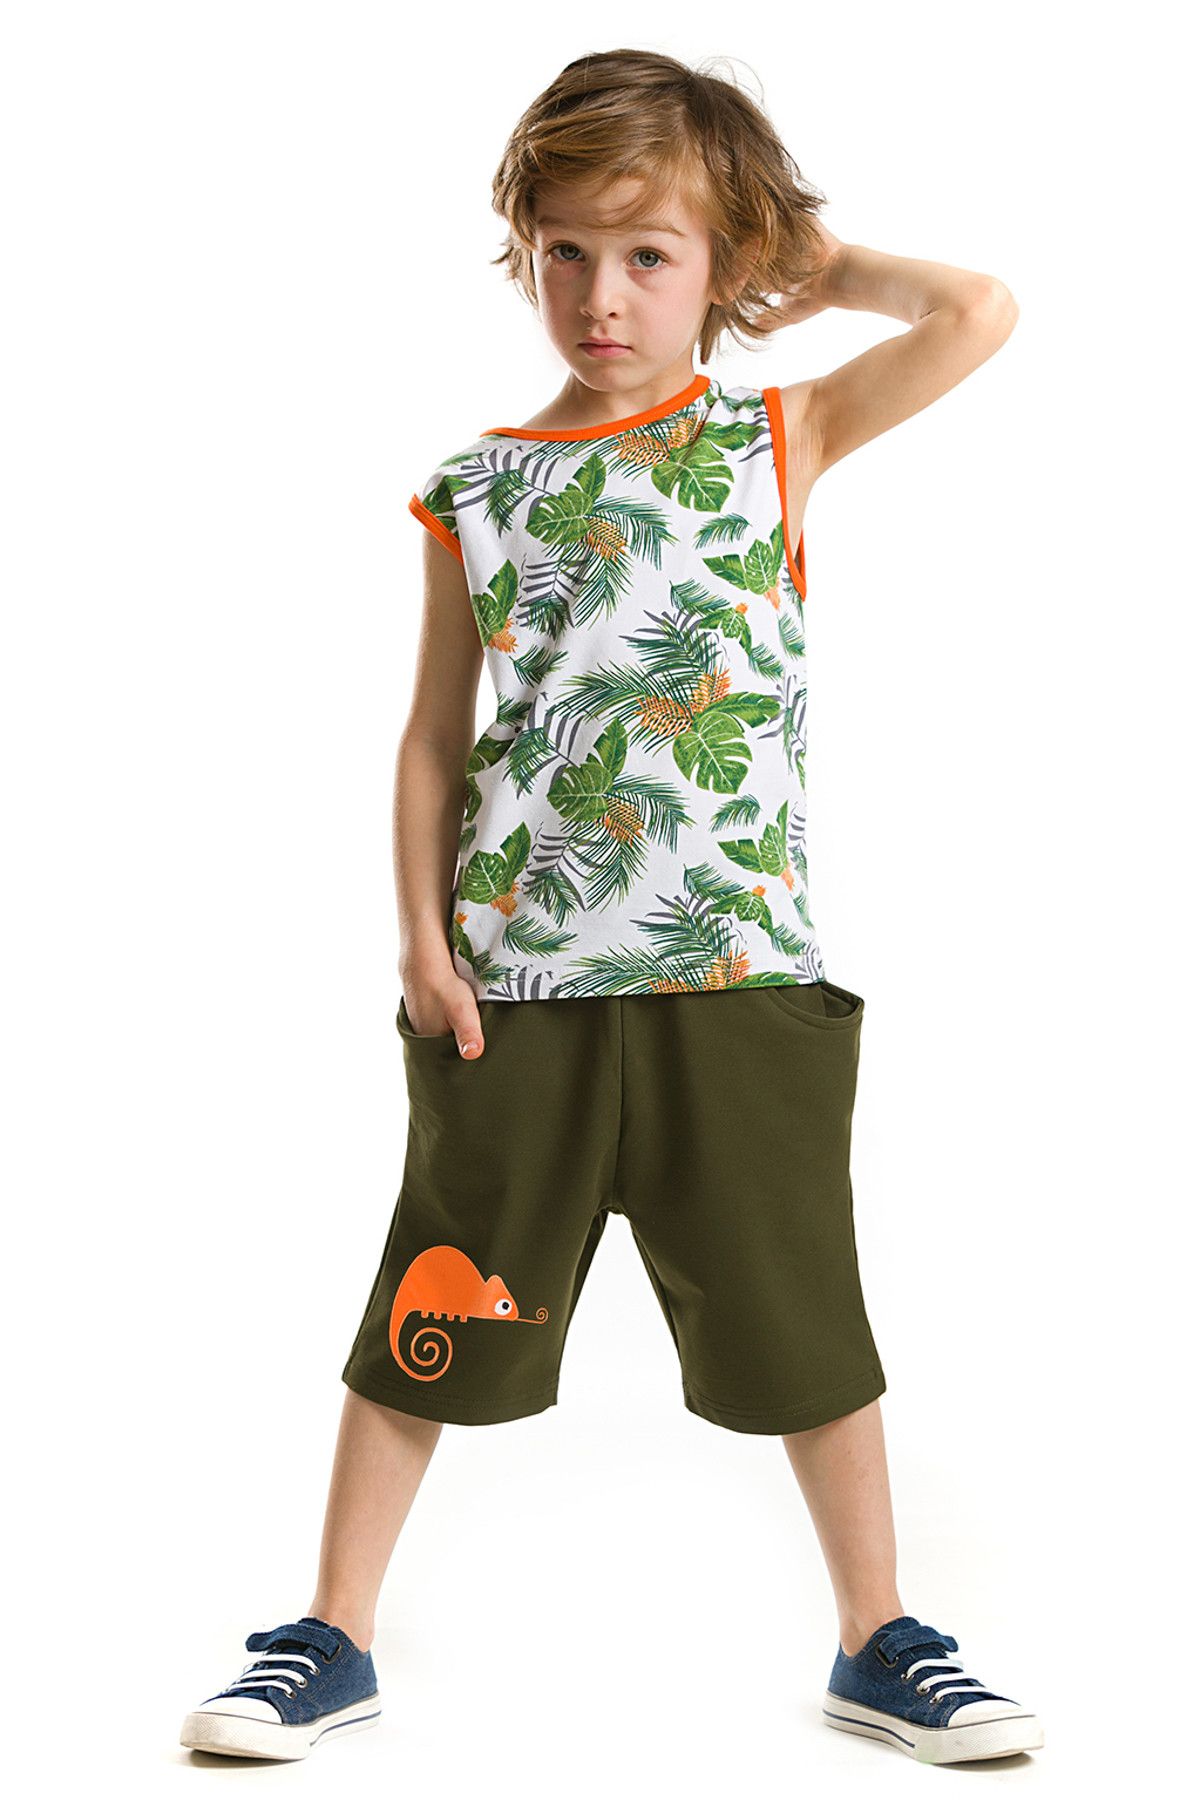 Denokids Turuncu Yeşil Erkek Çocuk Tropik Chamelon Şort Takım CFF-18Y2-091